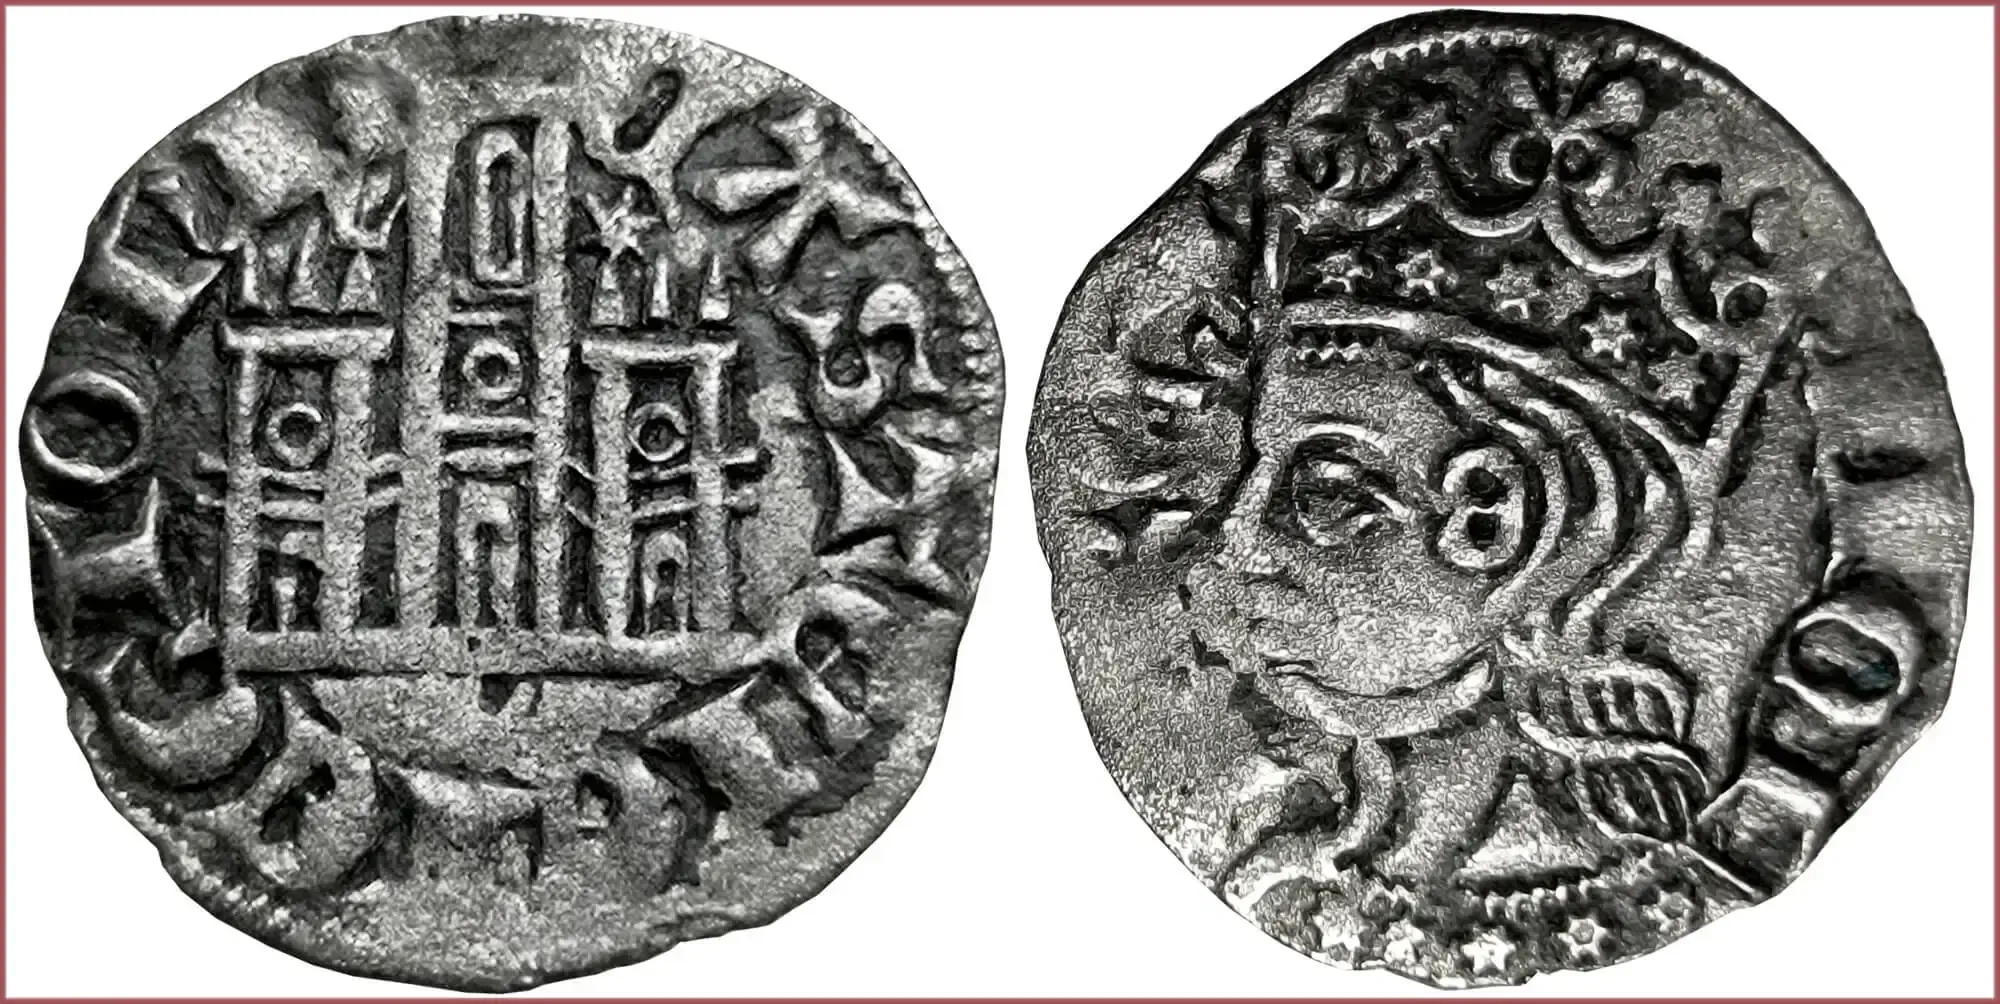 Cornado, 1333-1350: Crown of Castile (Kingdom of Castile and Leon)